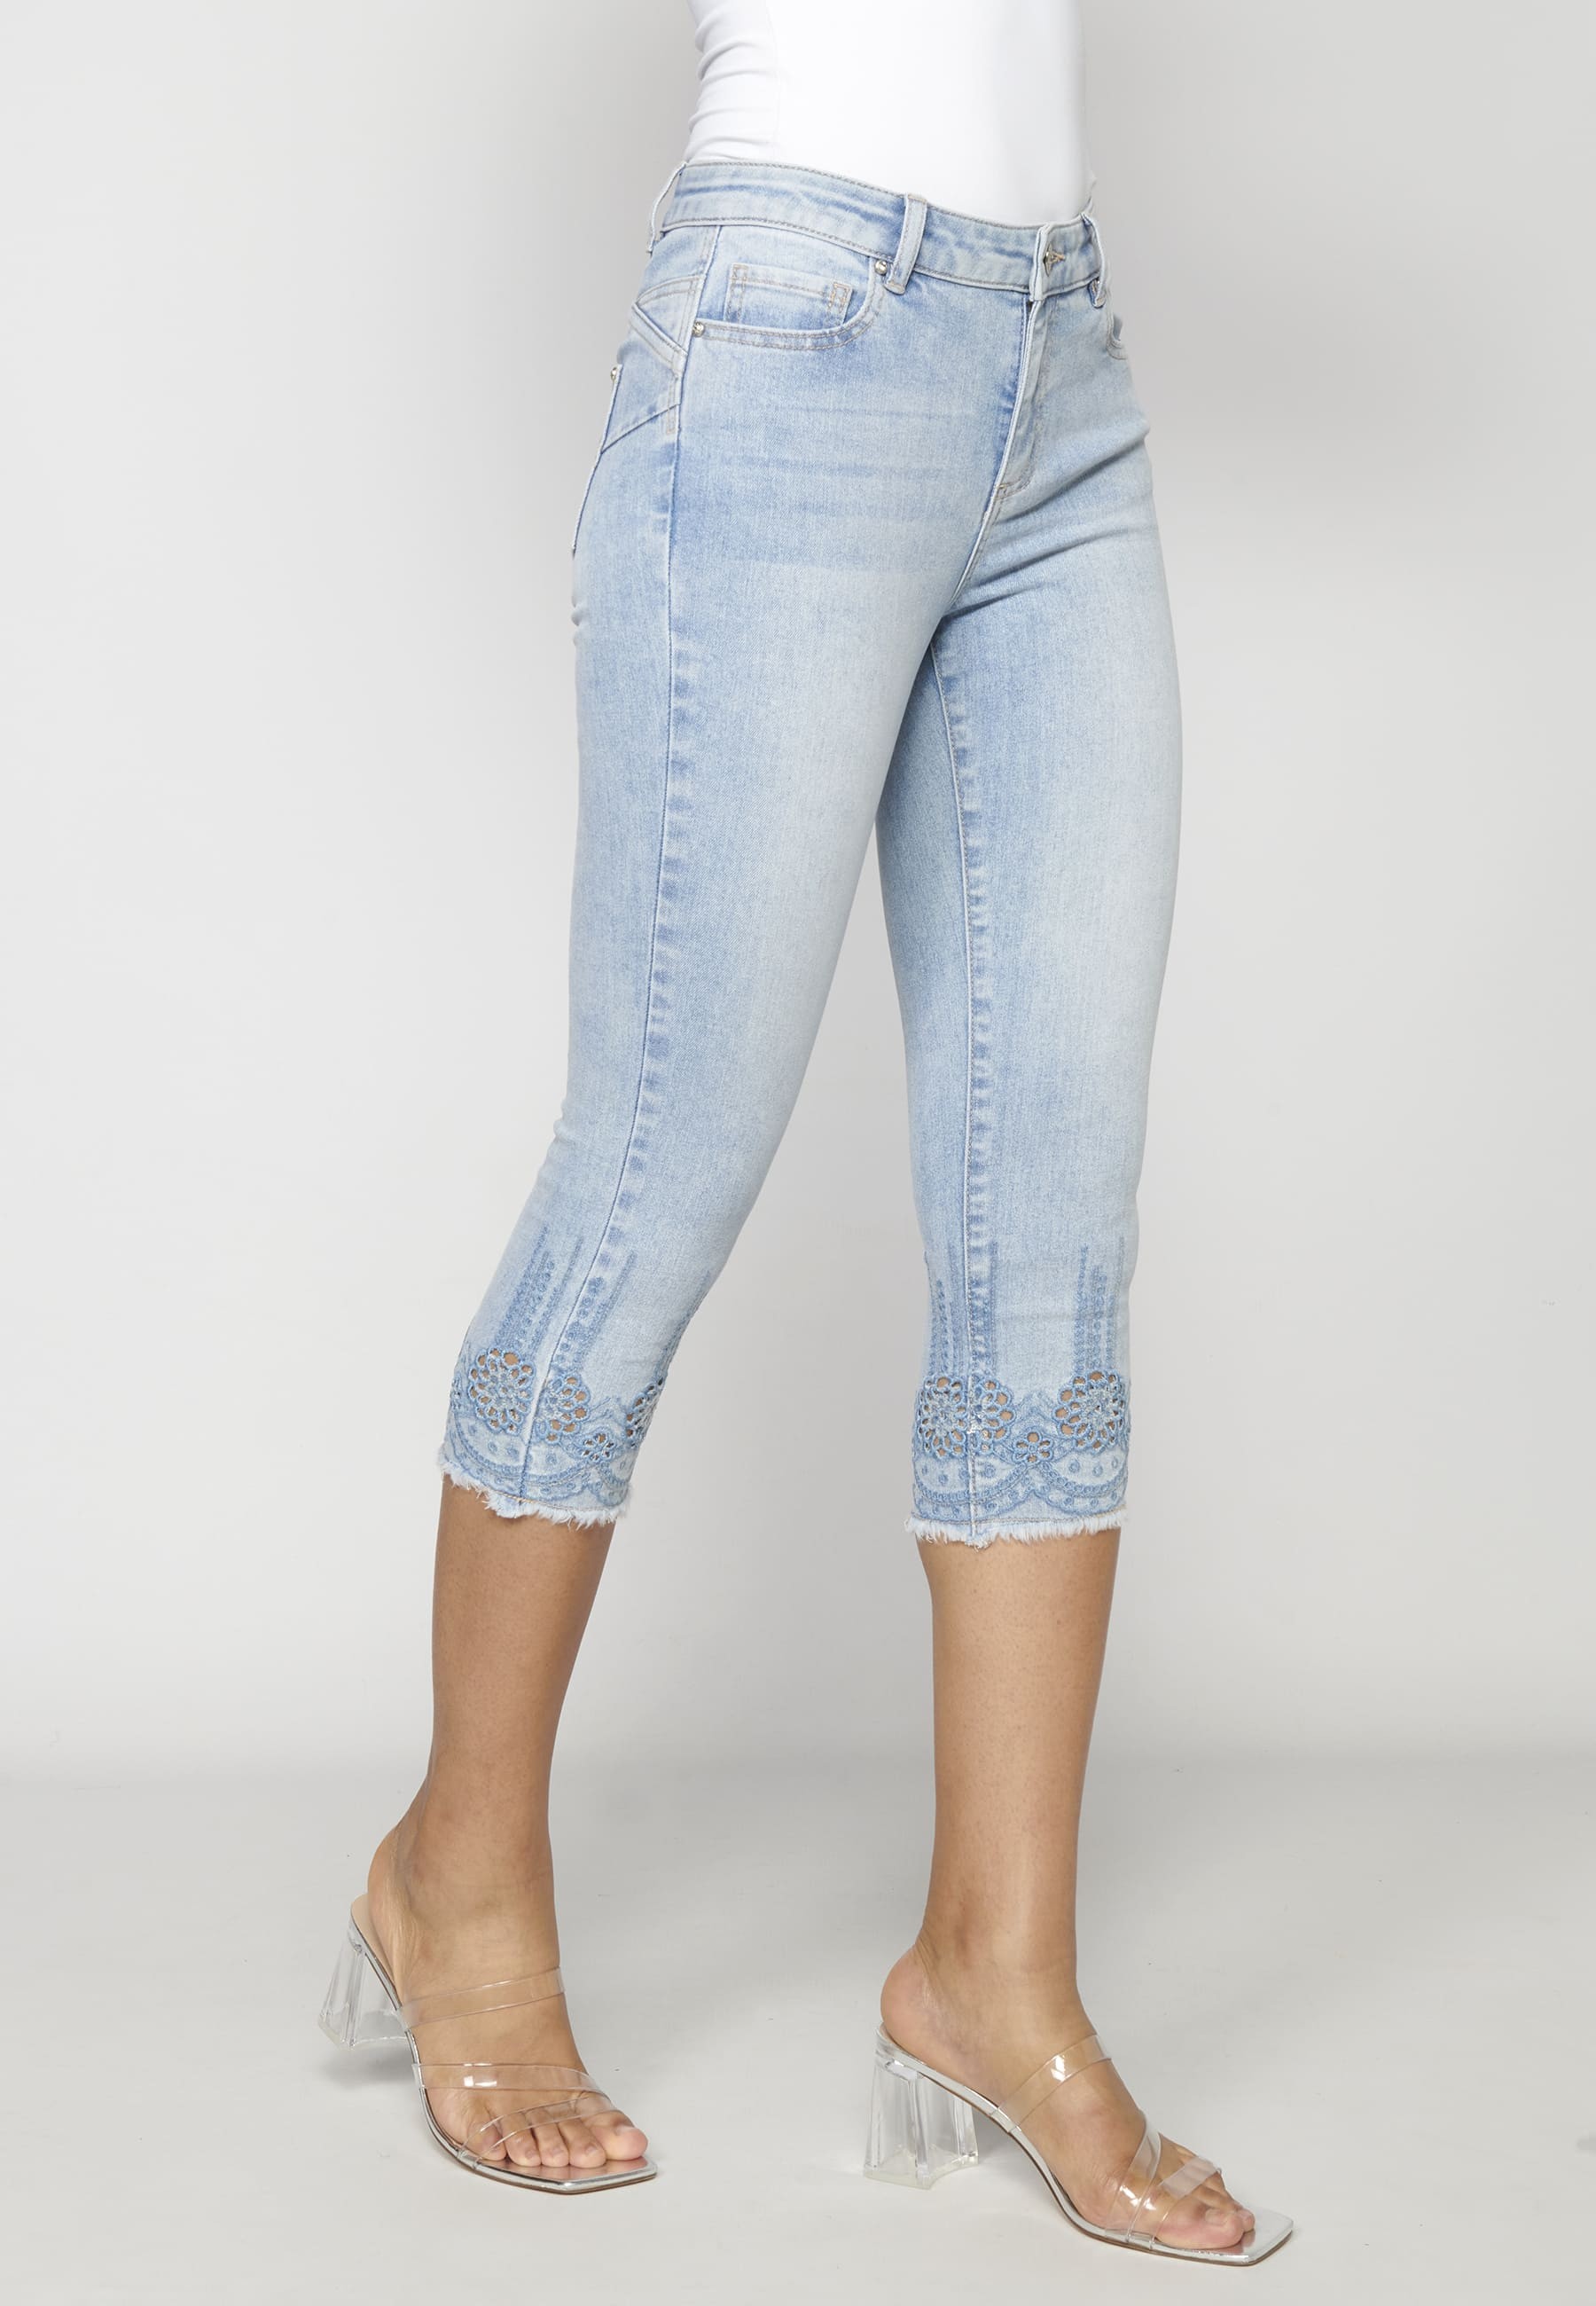 Blue jean capri pants with floral details for Woman